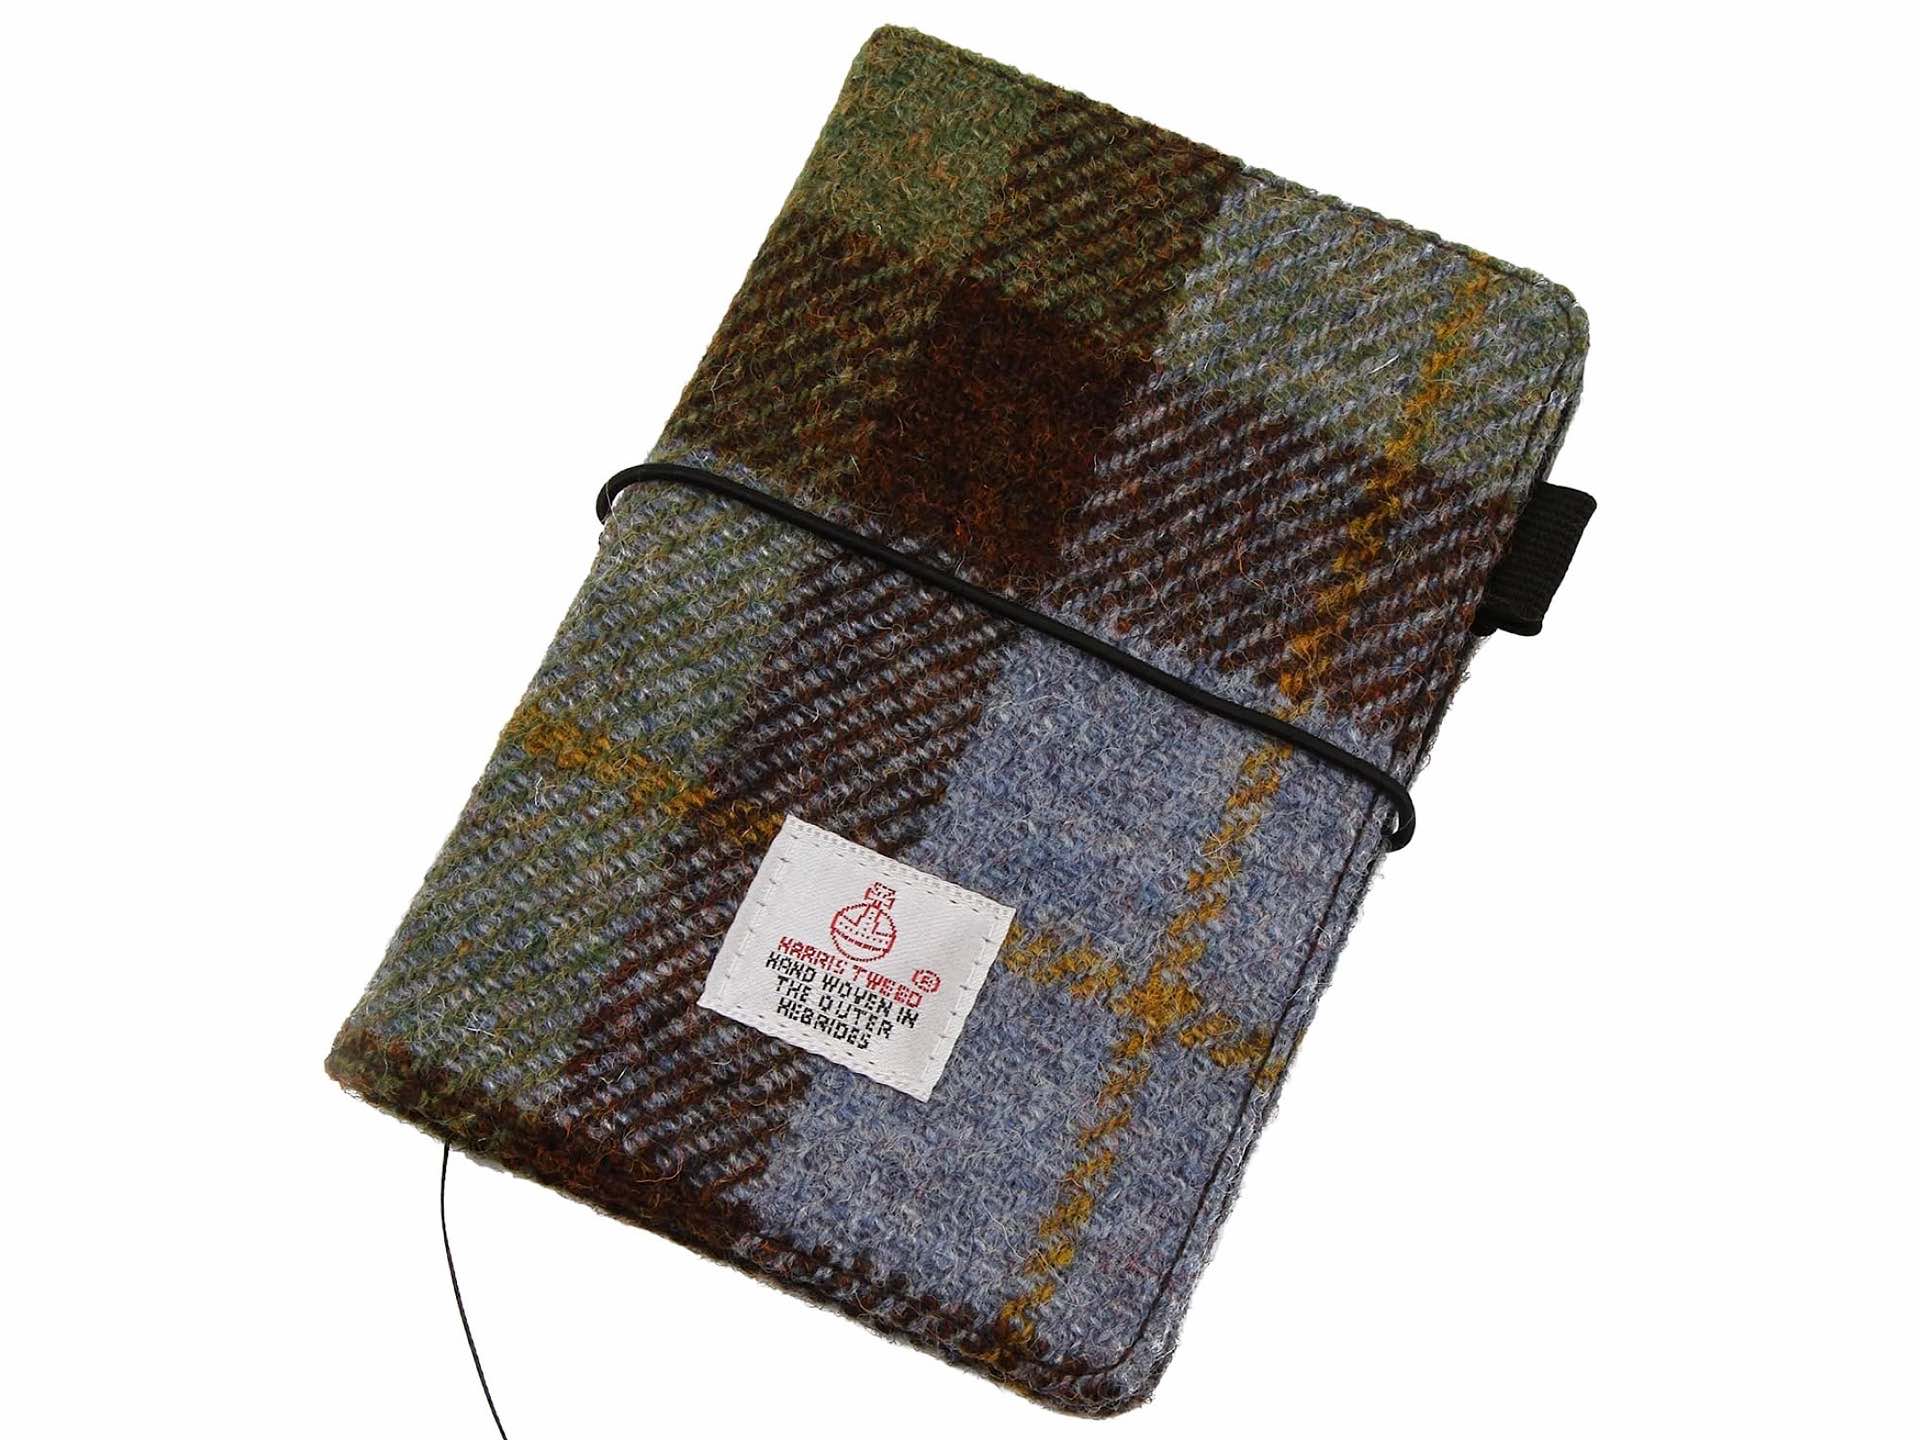 icobuty-harris-tweed-pocket-notebook-cover